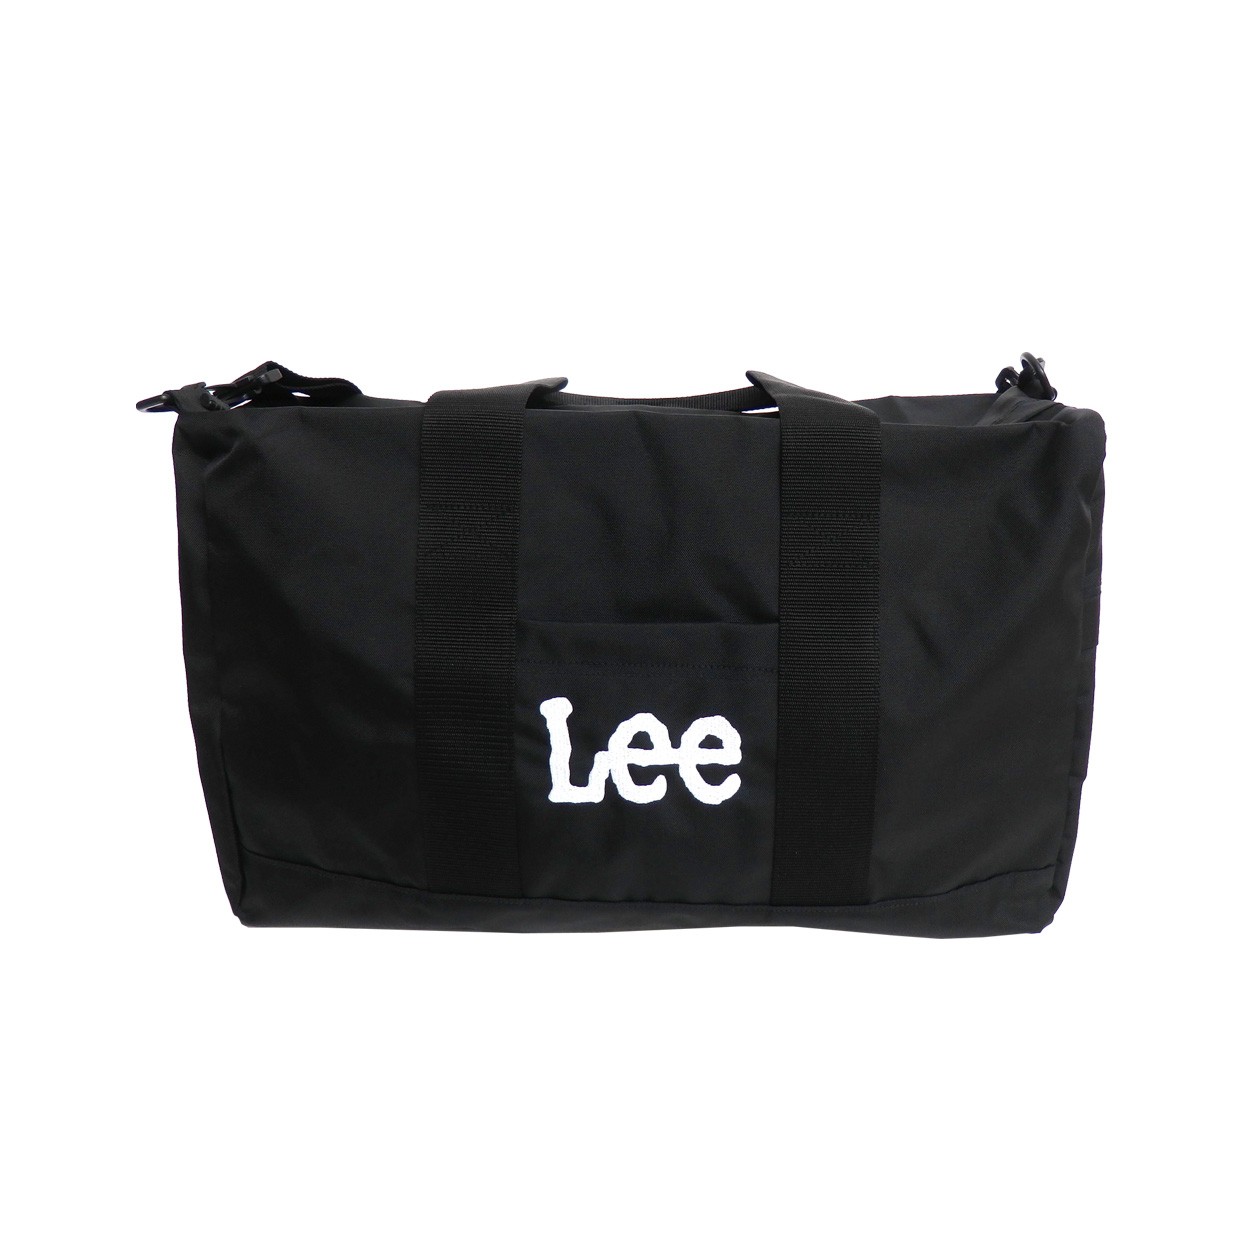 Lee ボストンバッグ リー ショルダーバッグ ロゴ 刺繍 2way バッグ ショルダー紐付き メンズ 鞄 レディース デイパック LEE-029